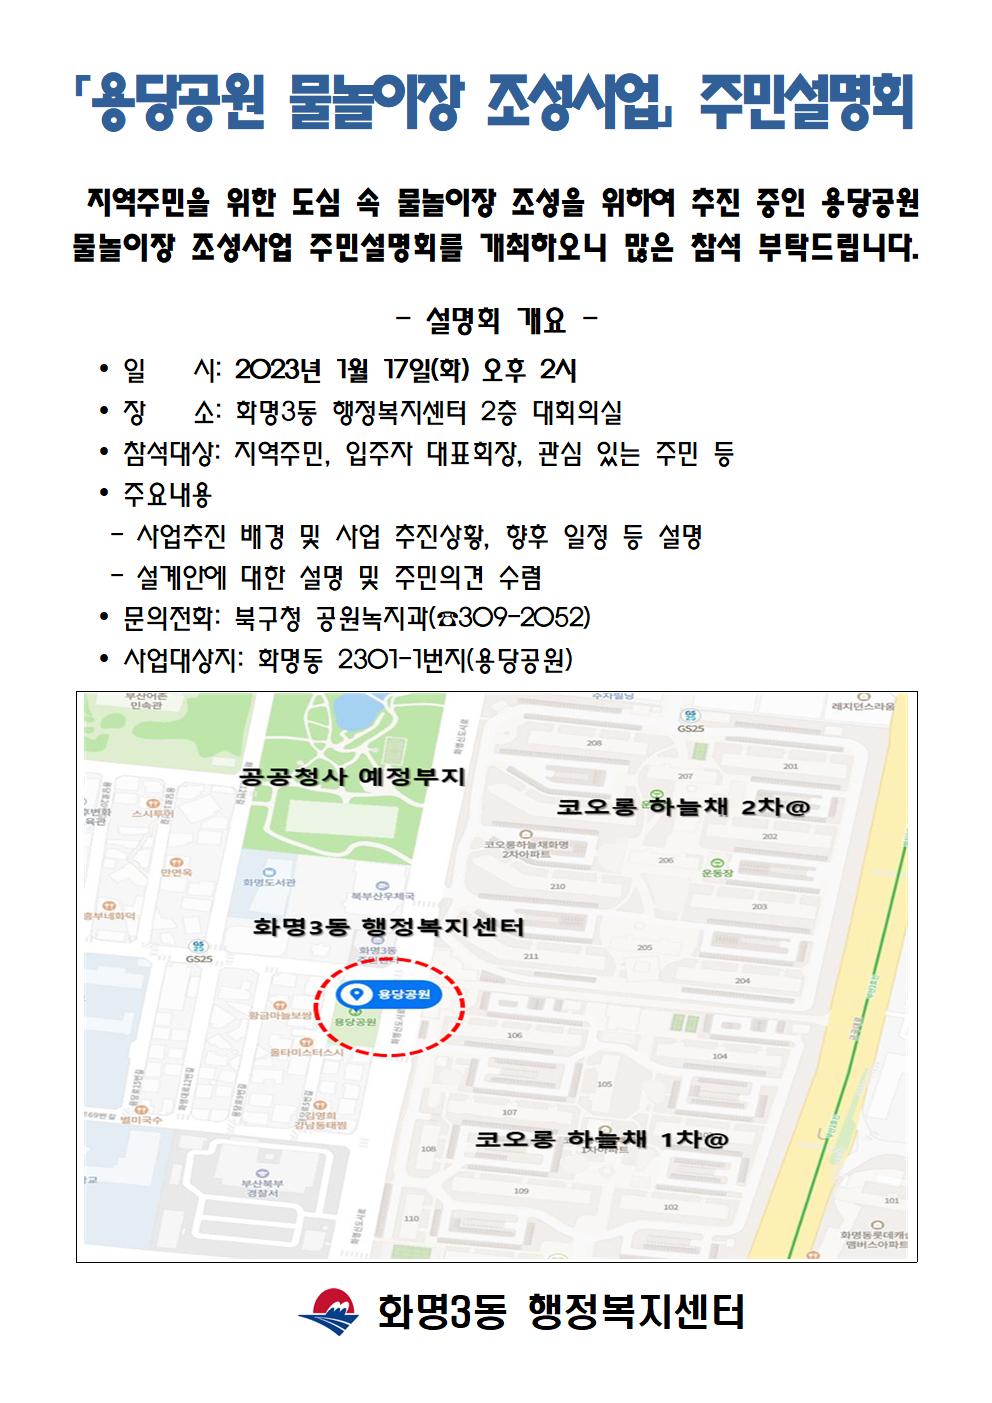 용당공원 물놀이장 공사 관련 주민설명회 개최